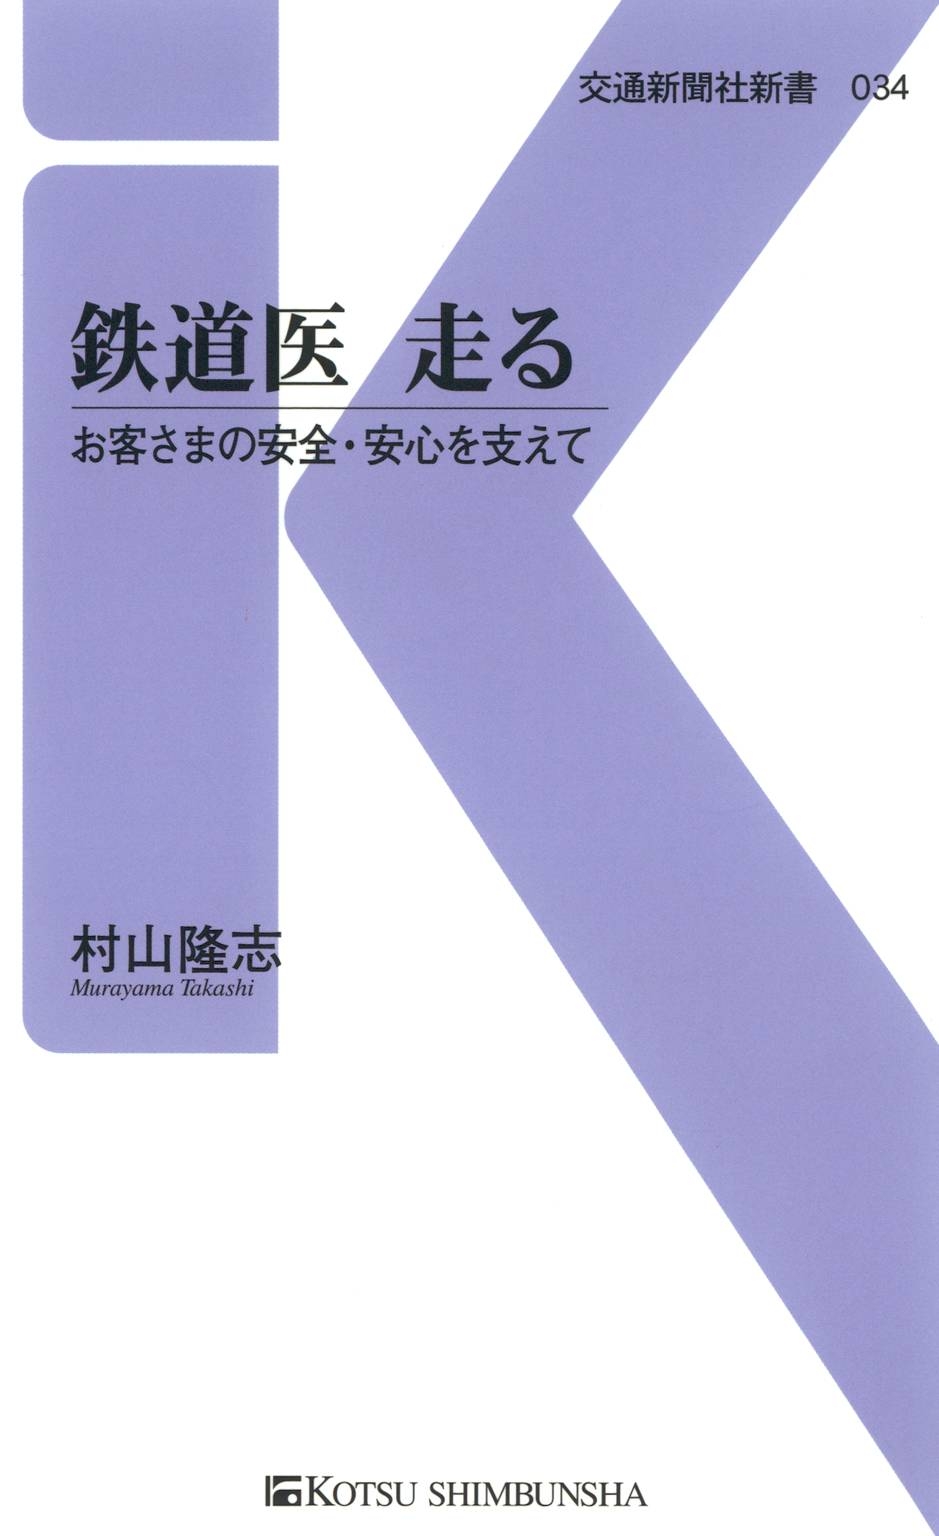 リスクラブ 昭和の本二冊 高い買取 homma-consulting.jp